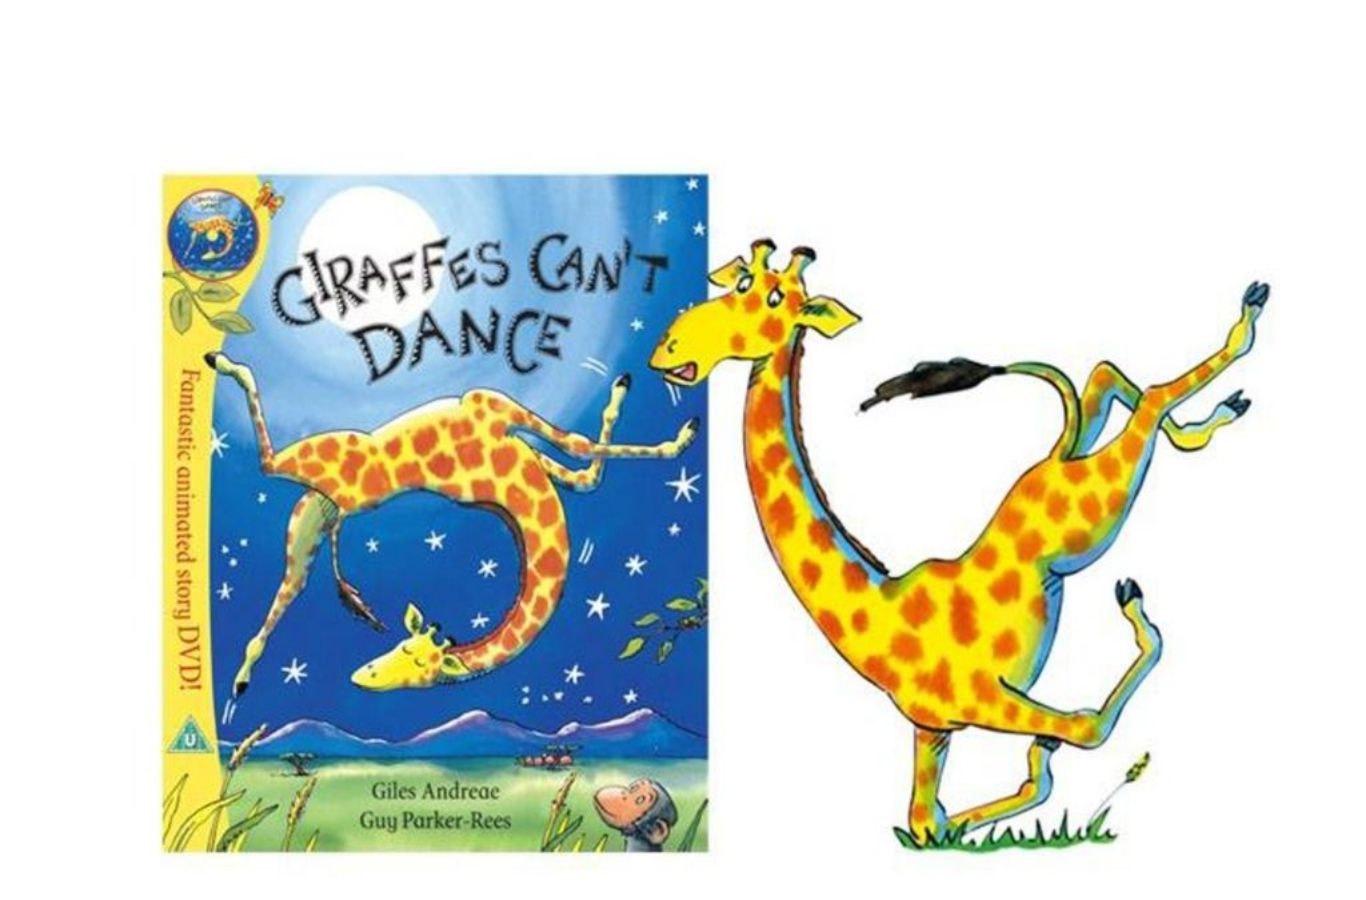 Học tiếng Anh qua sách cho bé 5 tuổi: Giraffes Can’t Dance